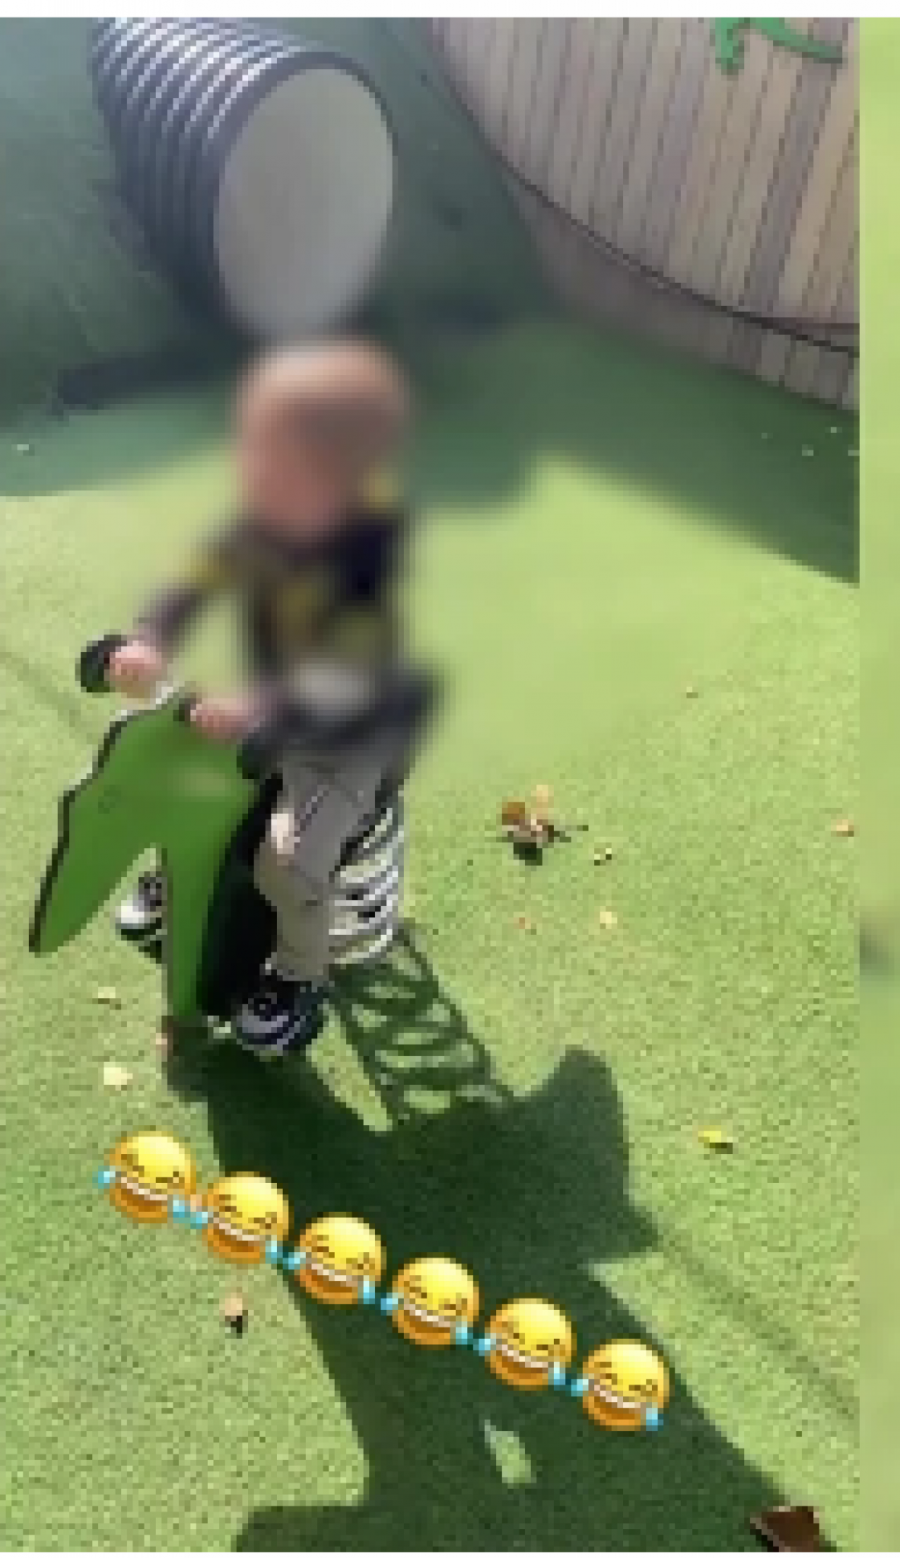 ZALETEO SE NA KOZE Hit snimak malog Željka, ludo se provodio u Zoološkom vrtu (FOTO/VIDEO)